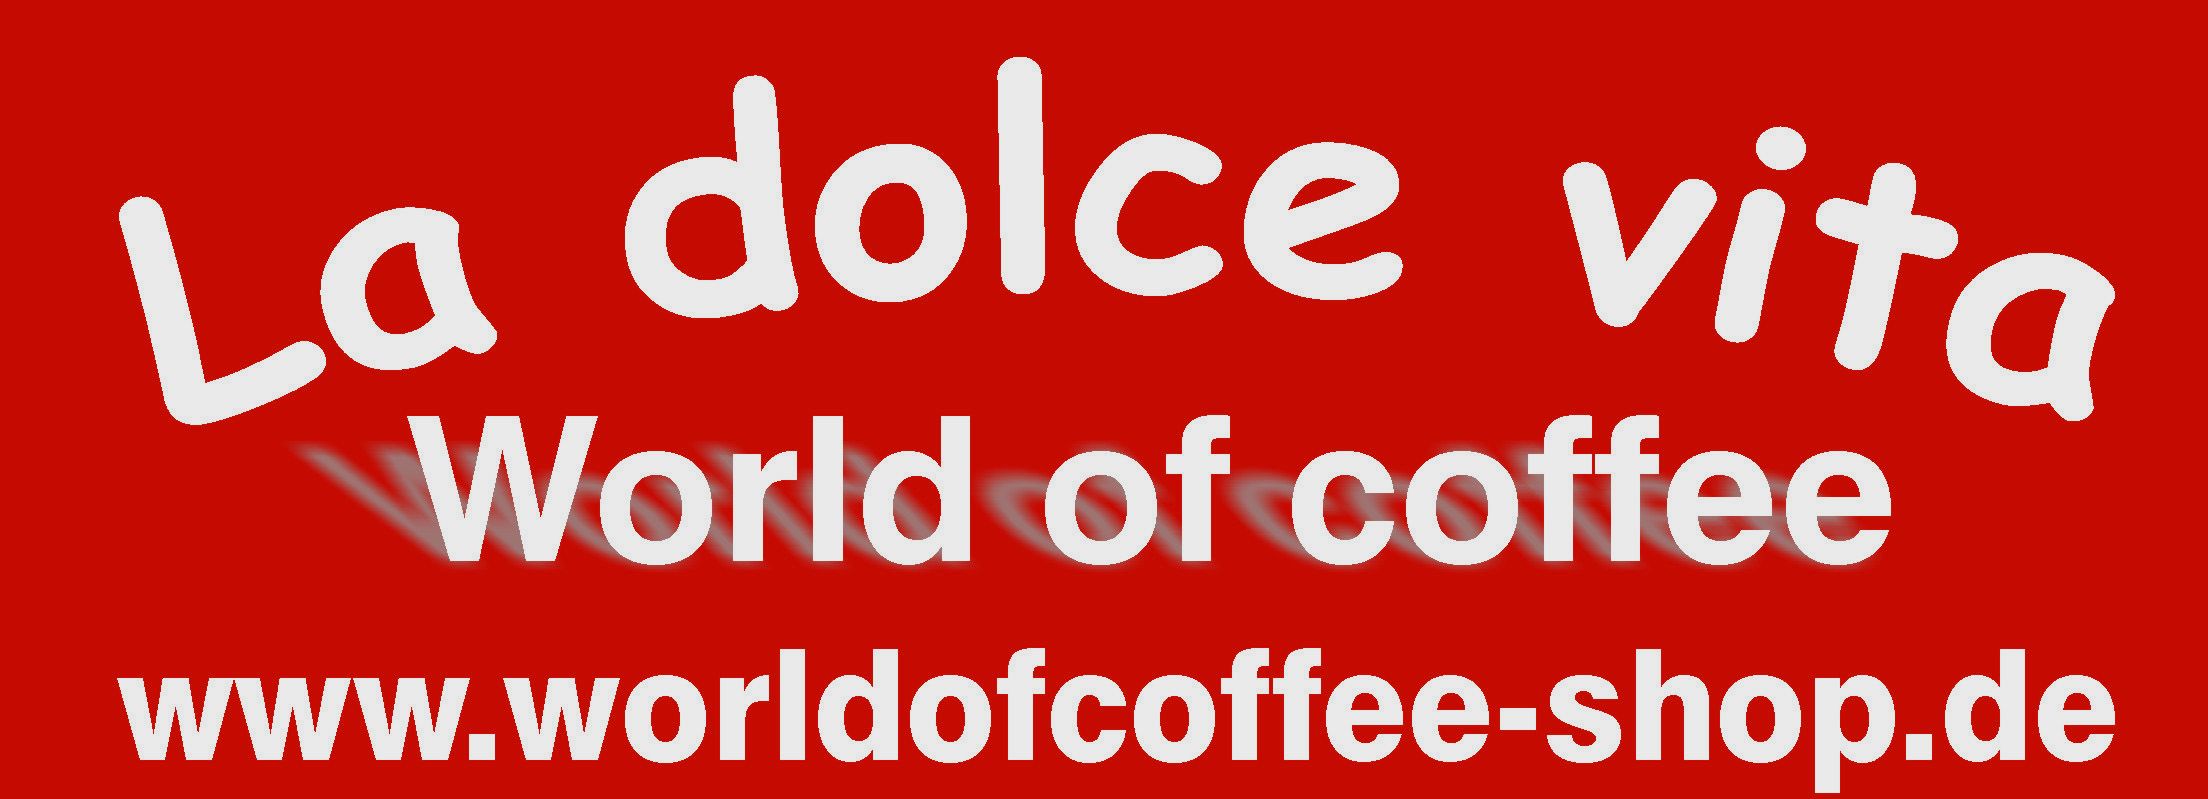 La dolce vita & World of coffee